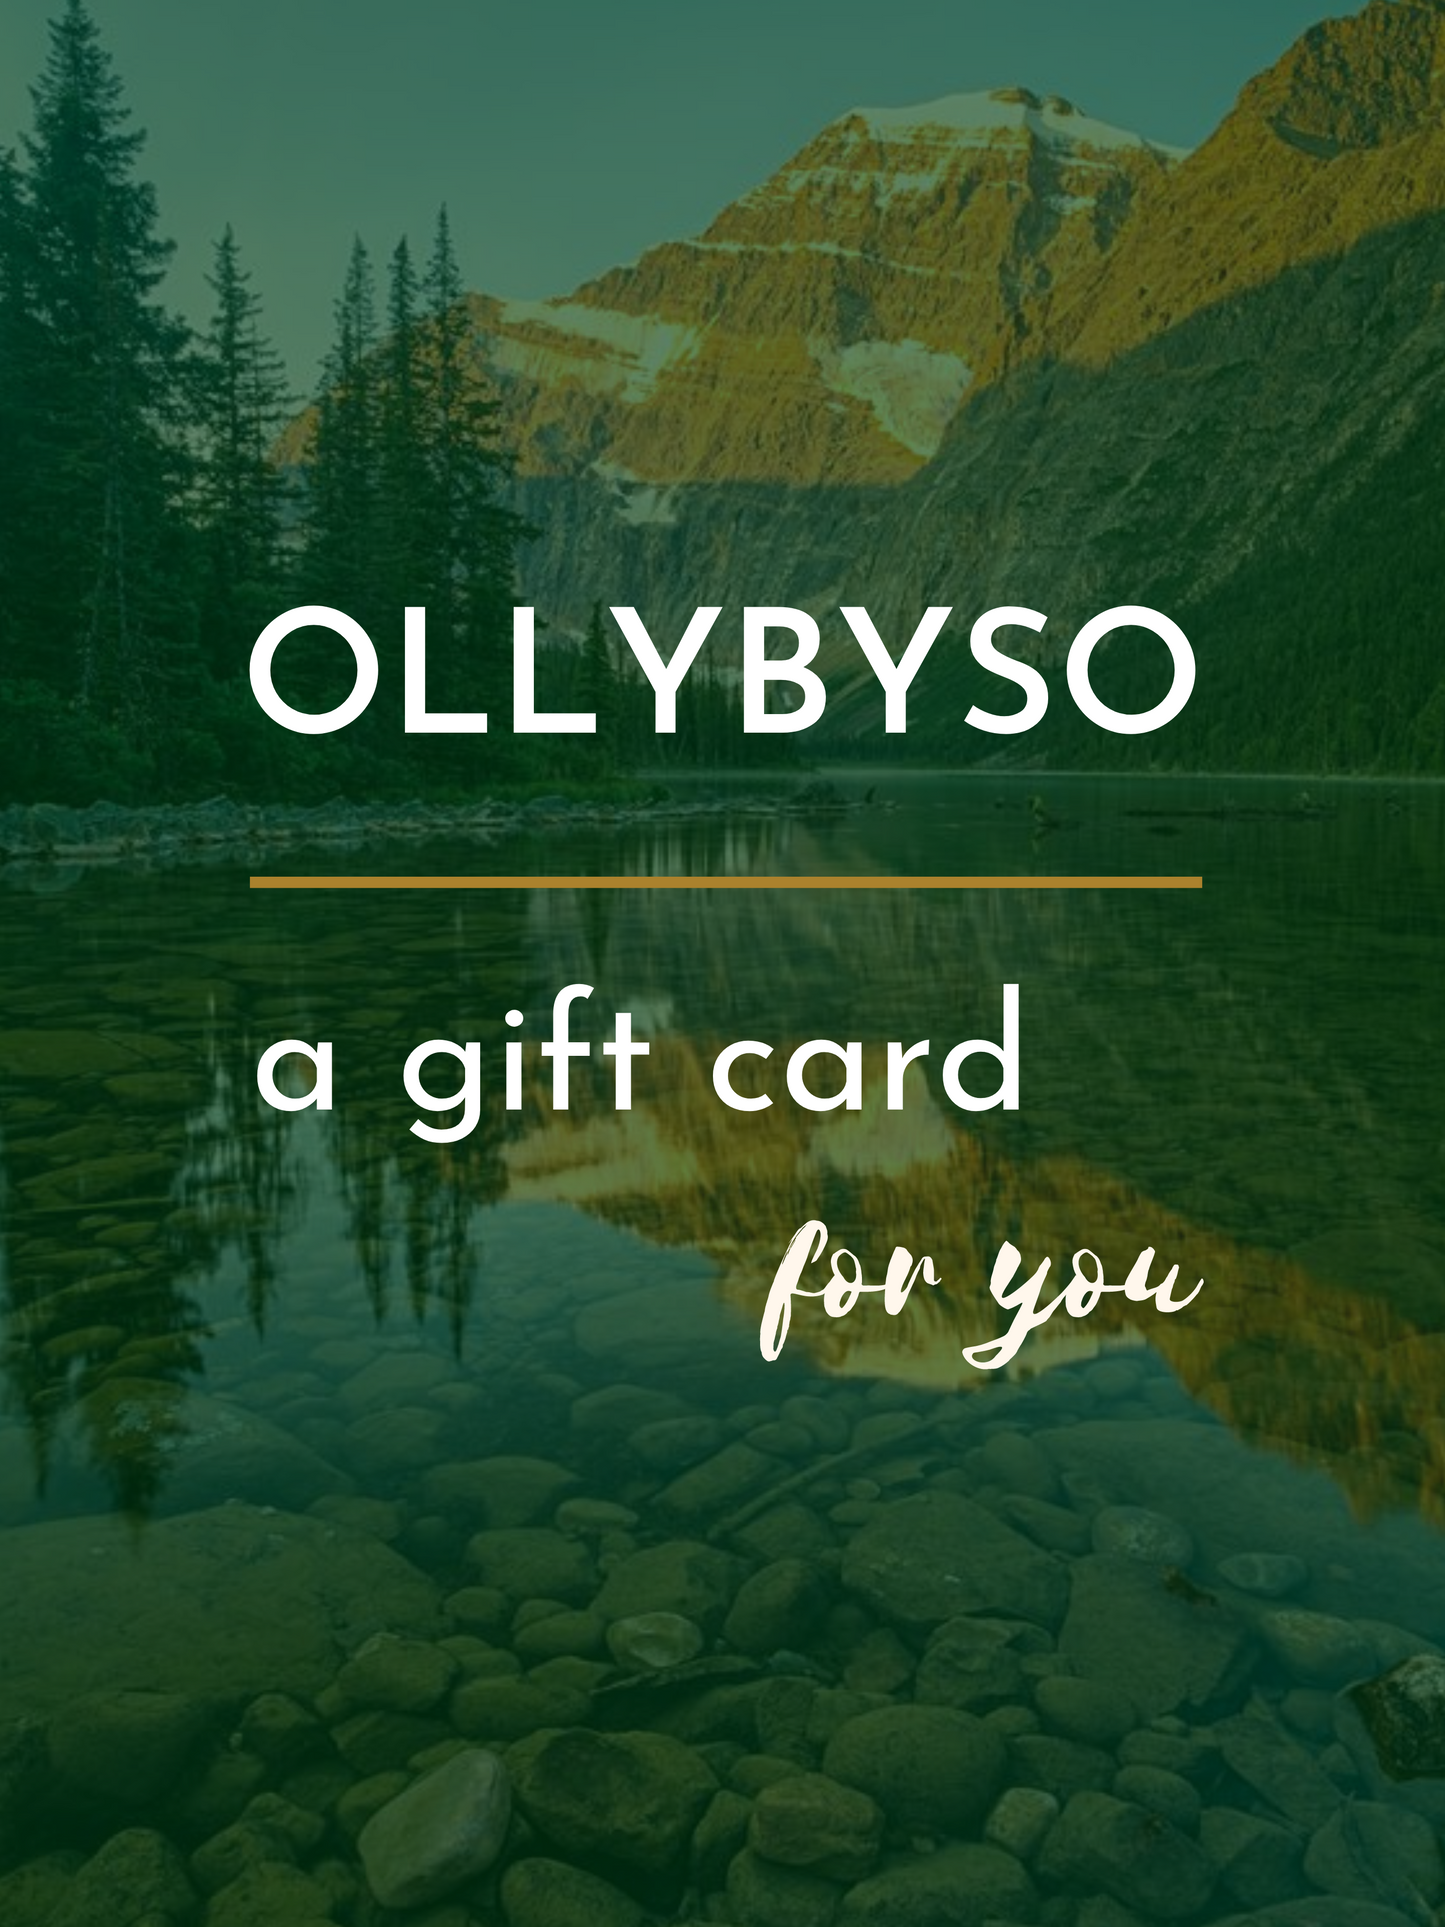 OLLYBYSO GIFT CARD